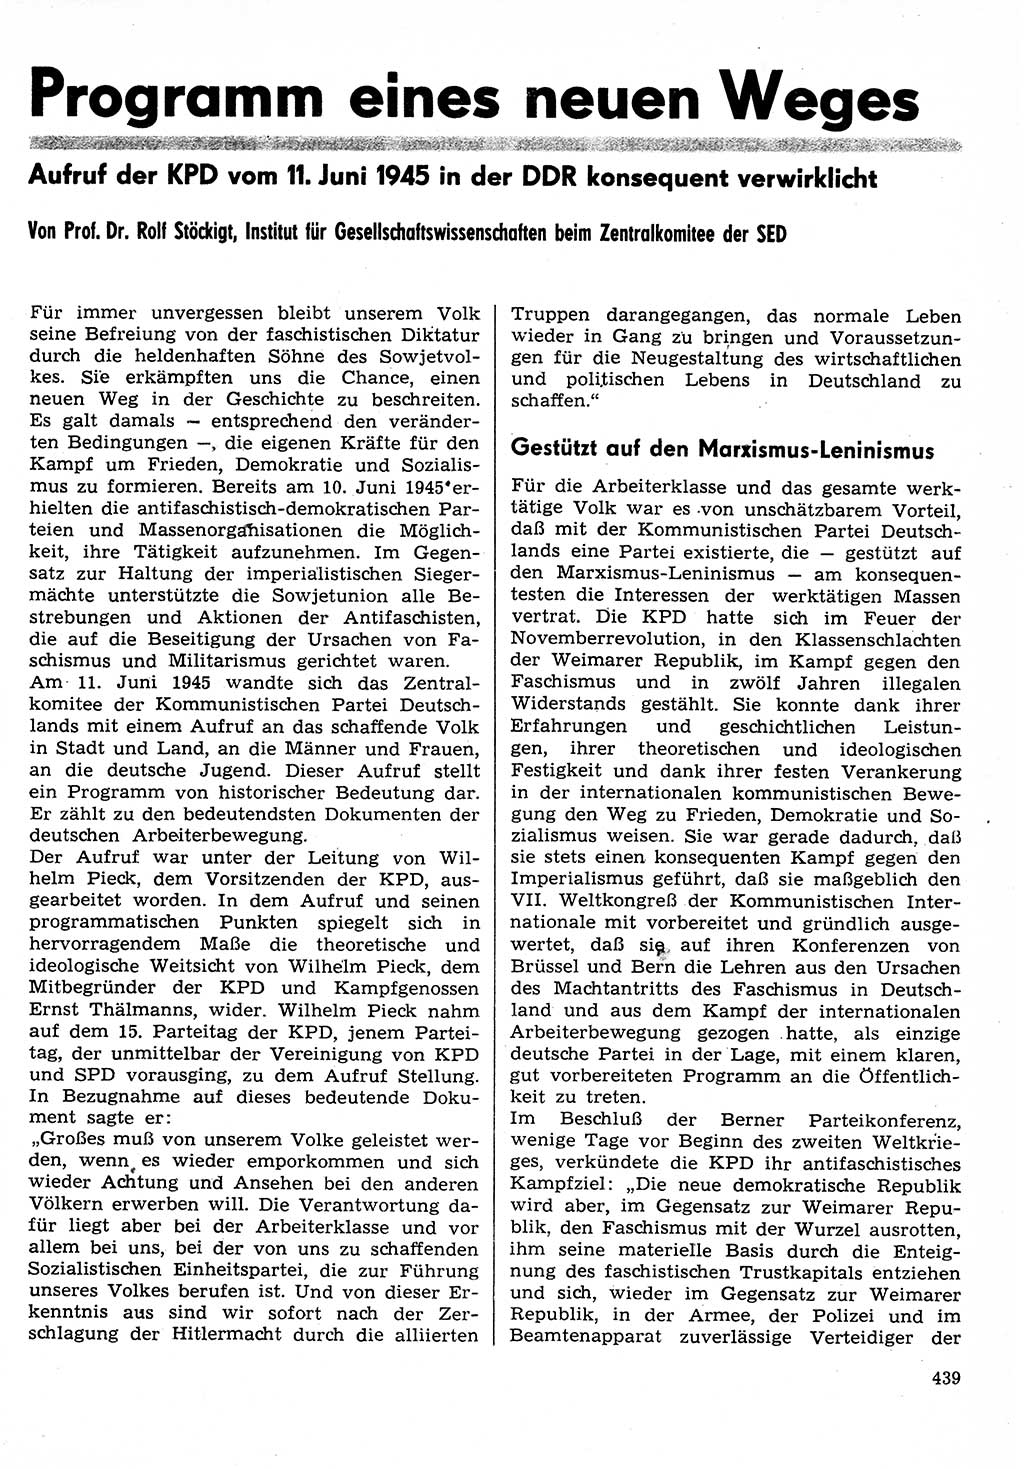 Neuer Weg (NW), Organ des Zentralkomitees (ZK) der SED (Sozialistische Einheitspartei Deutschlands) für Fragen des Parteilebens, 30. Jahrgang [Deutsche Demokratische Republik (DDR)] 1975, Seite 439 (NW ZK SED DDR 1975, S. 439)